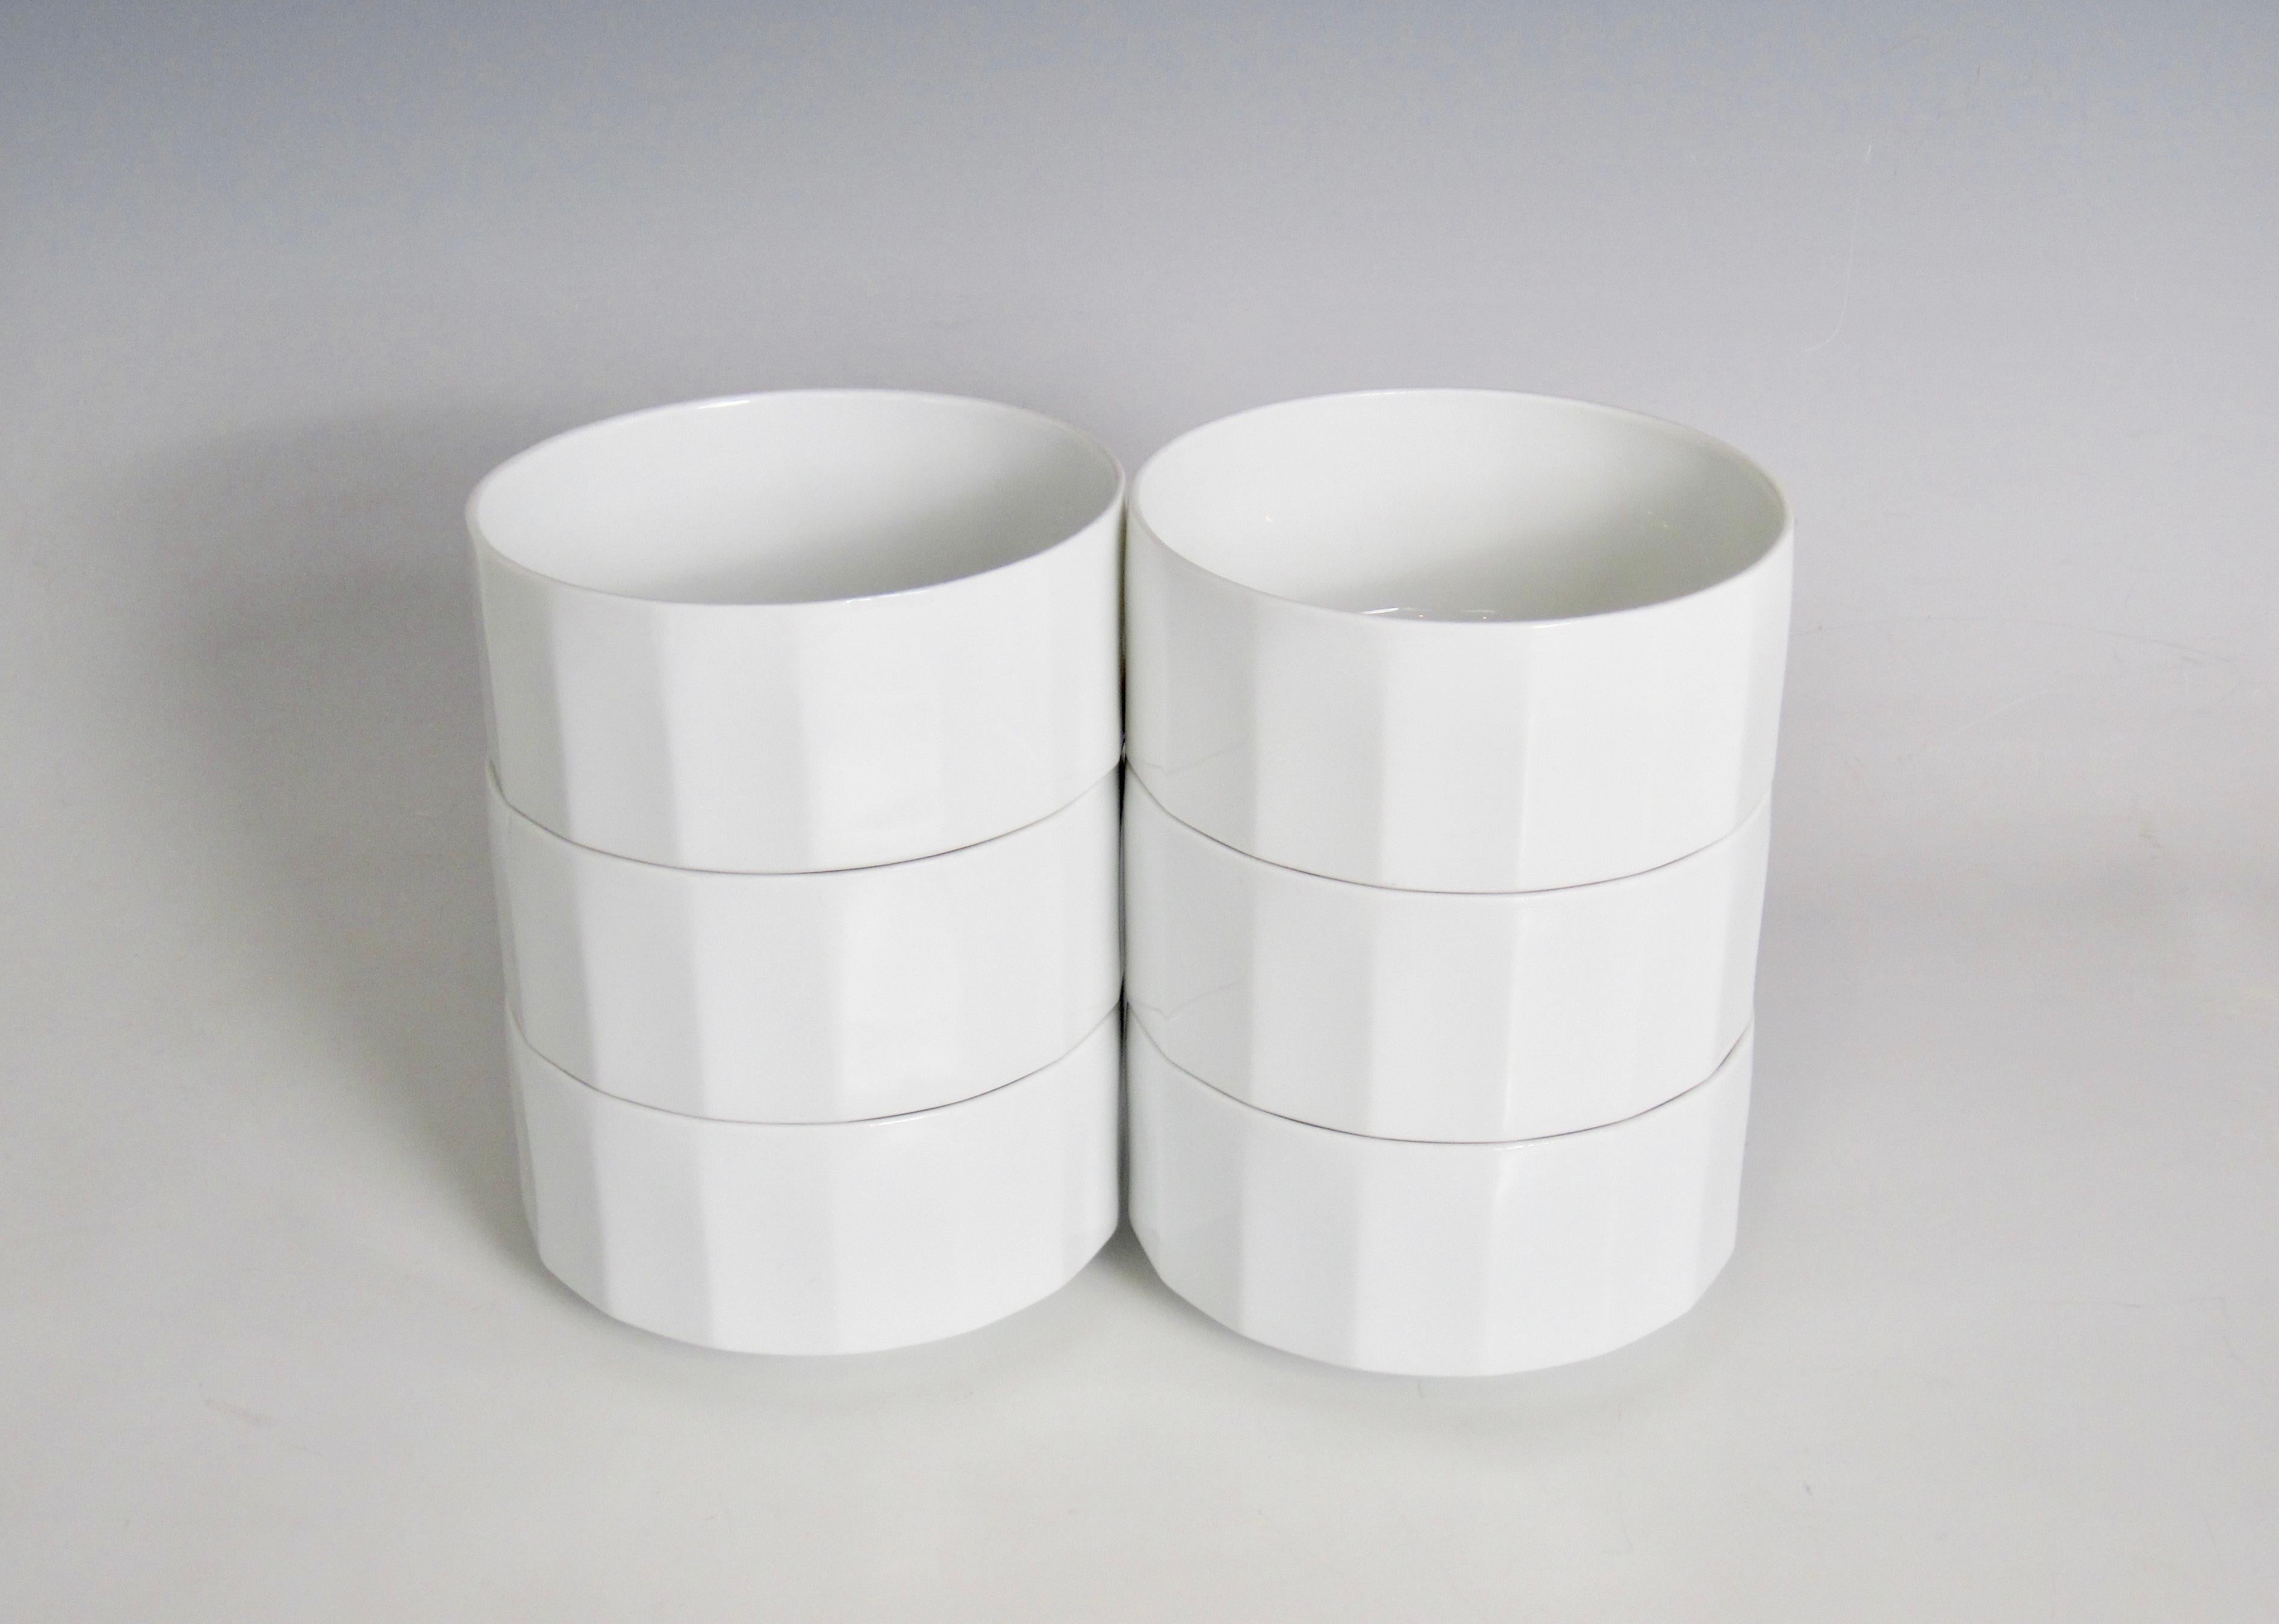 Tapio Wirkkala Rosenthal Germany Studio-Linie White Polygon Bowls, Set of Six 1